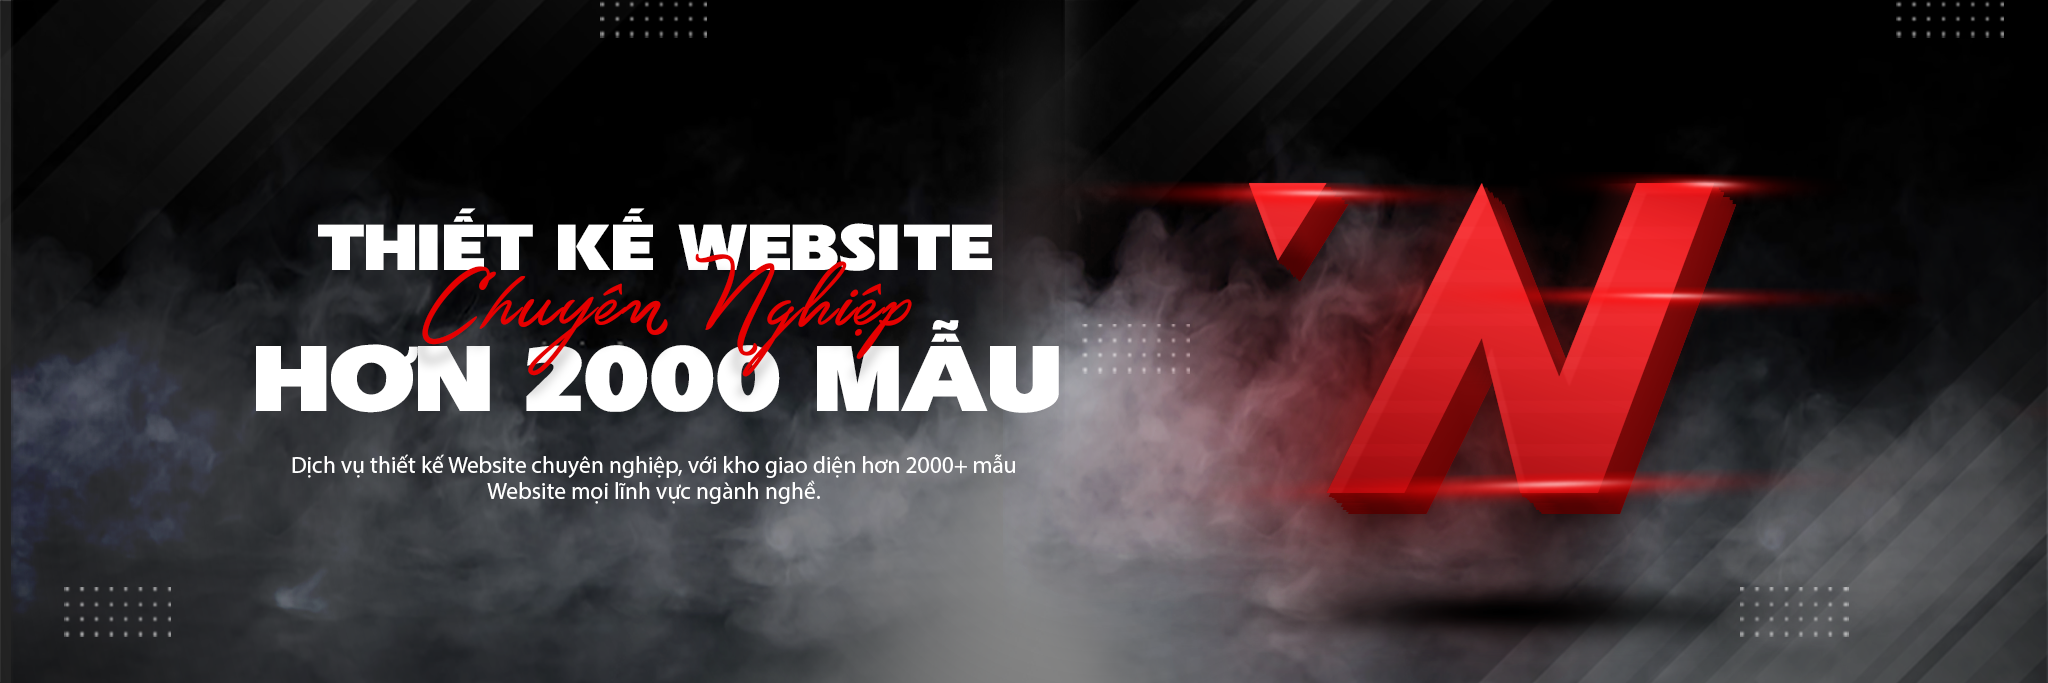 WebNow - Đơn vị thiết kế website trung tâm ngoại ngữ chuyên nghiệp tại TP.HCM 